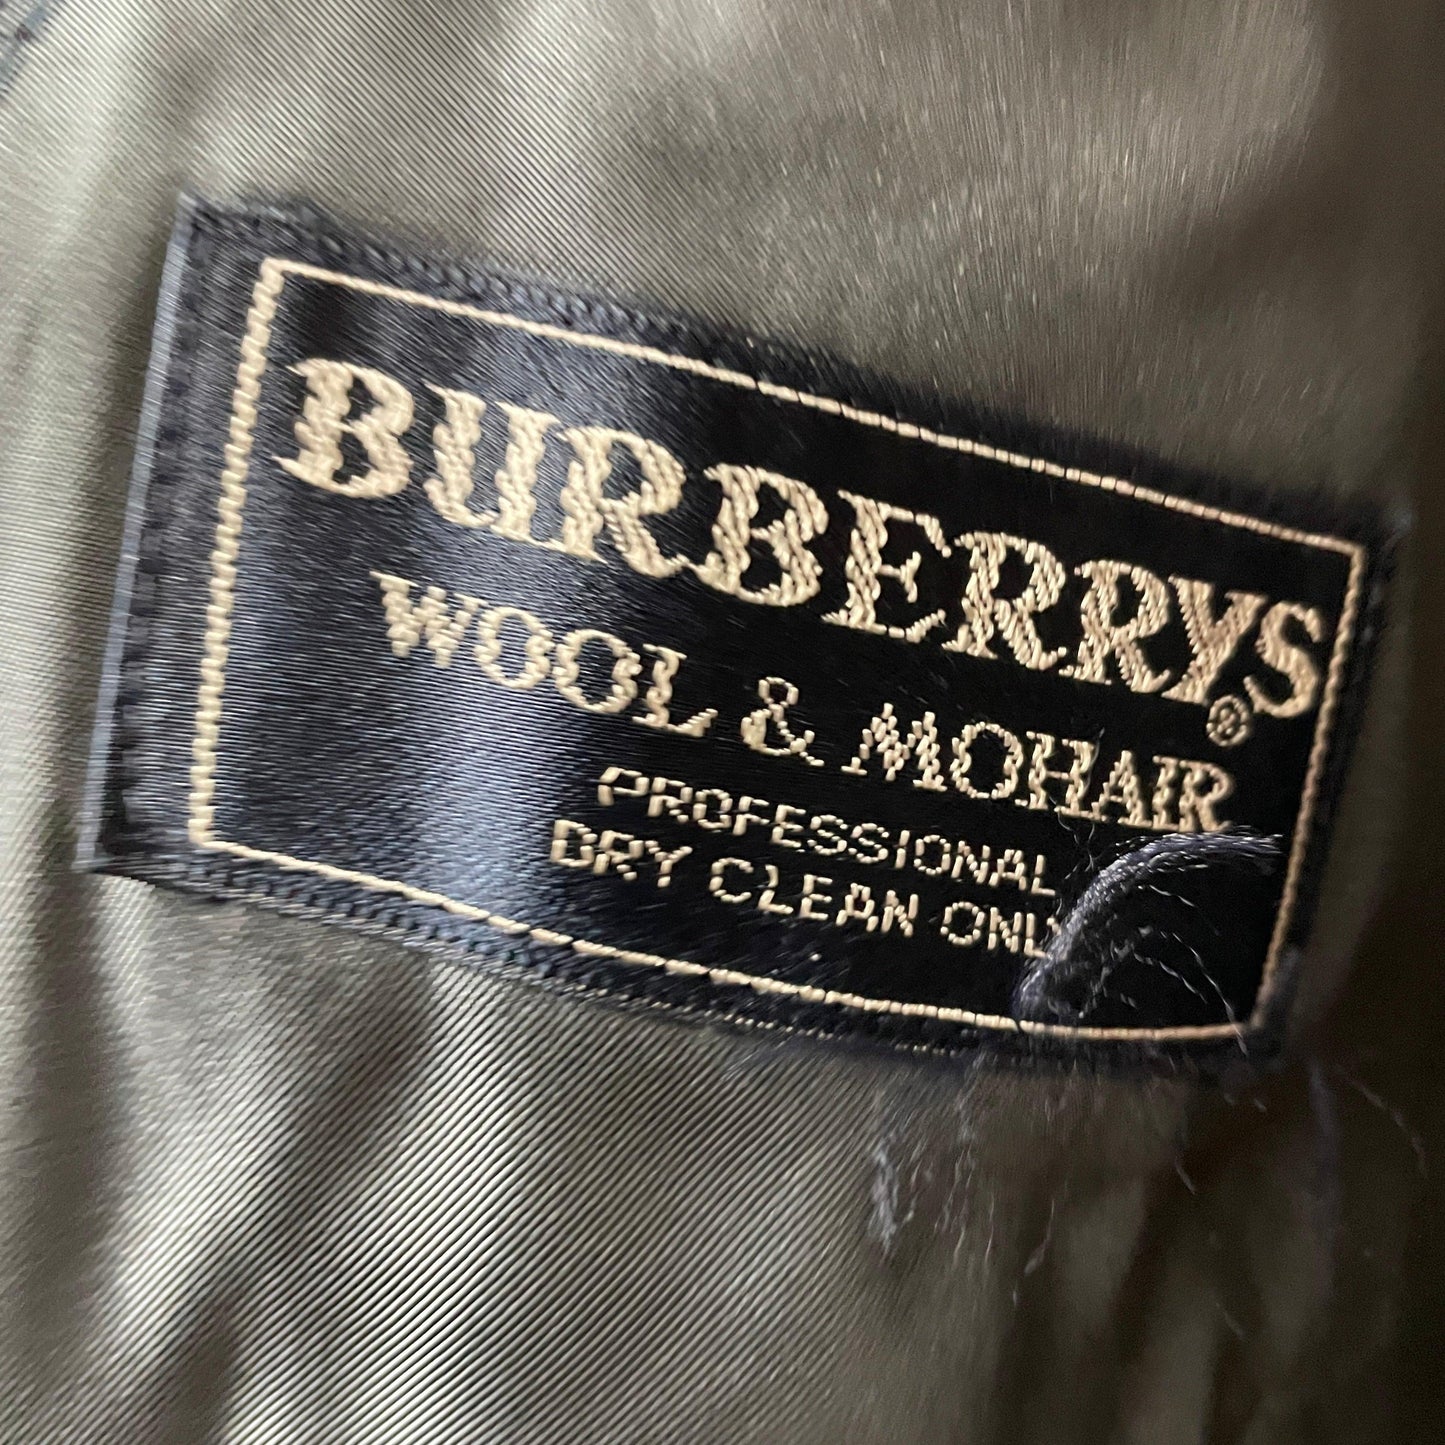 Burberrys blazer jacket burberry burberry